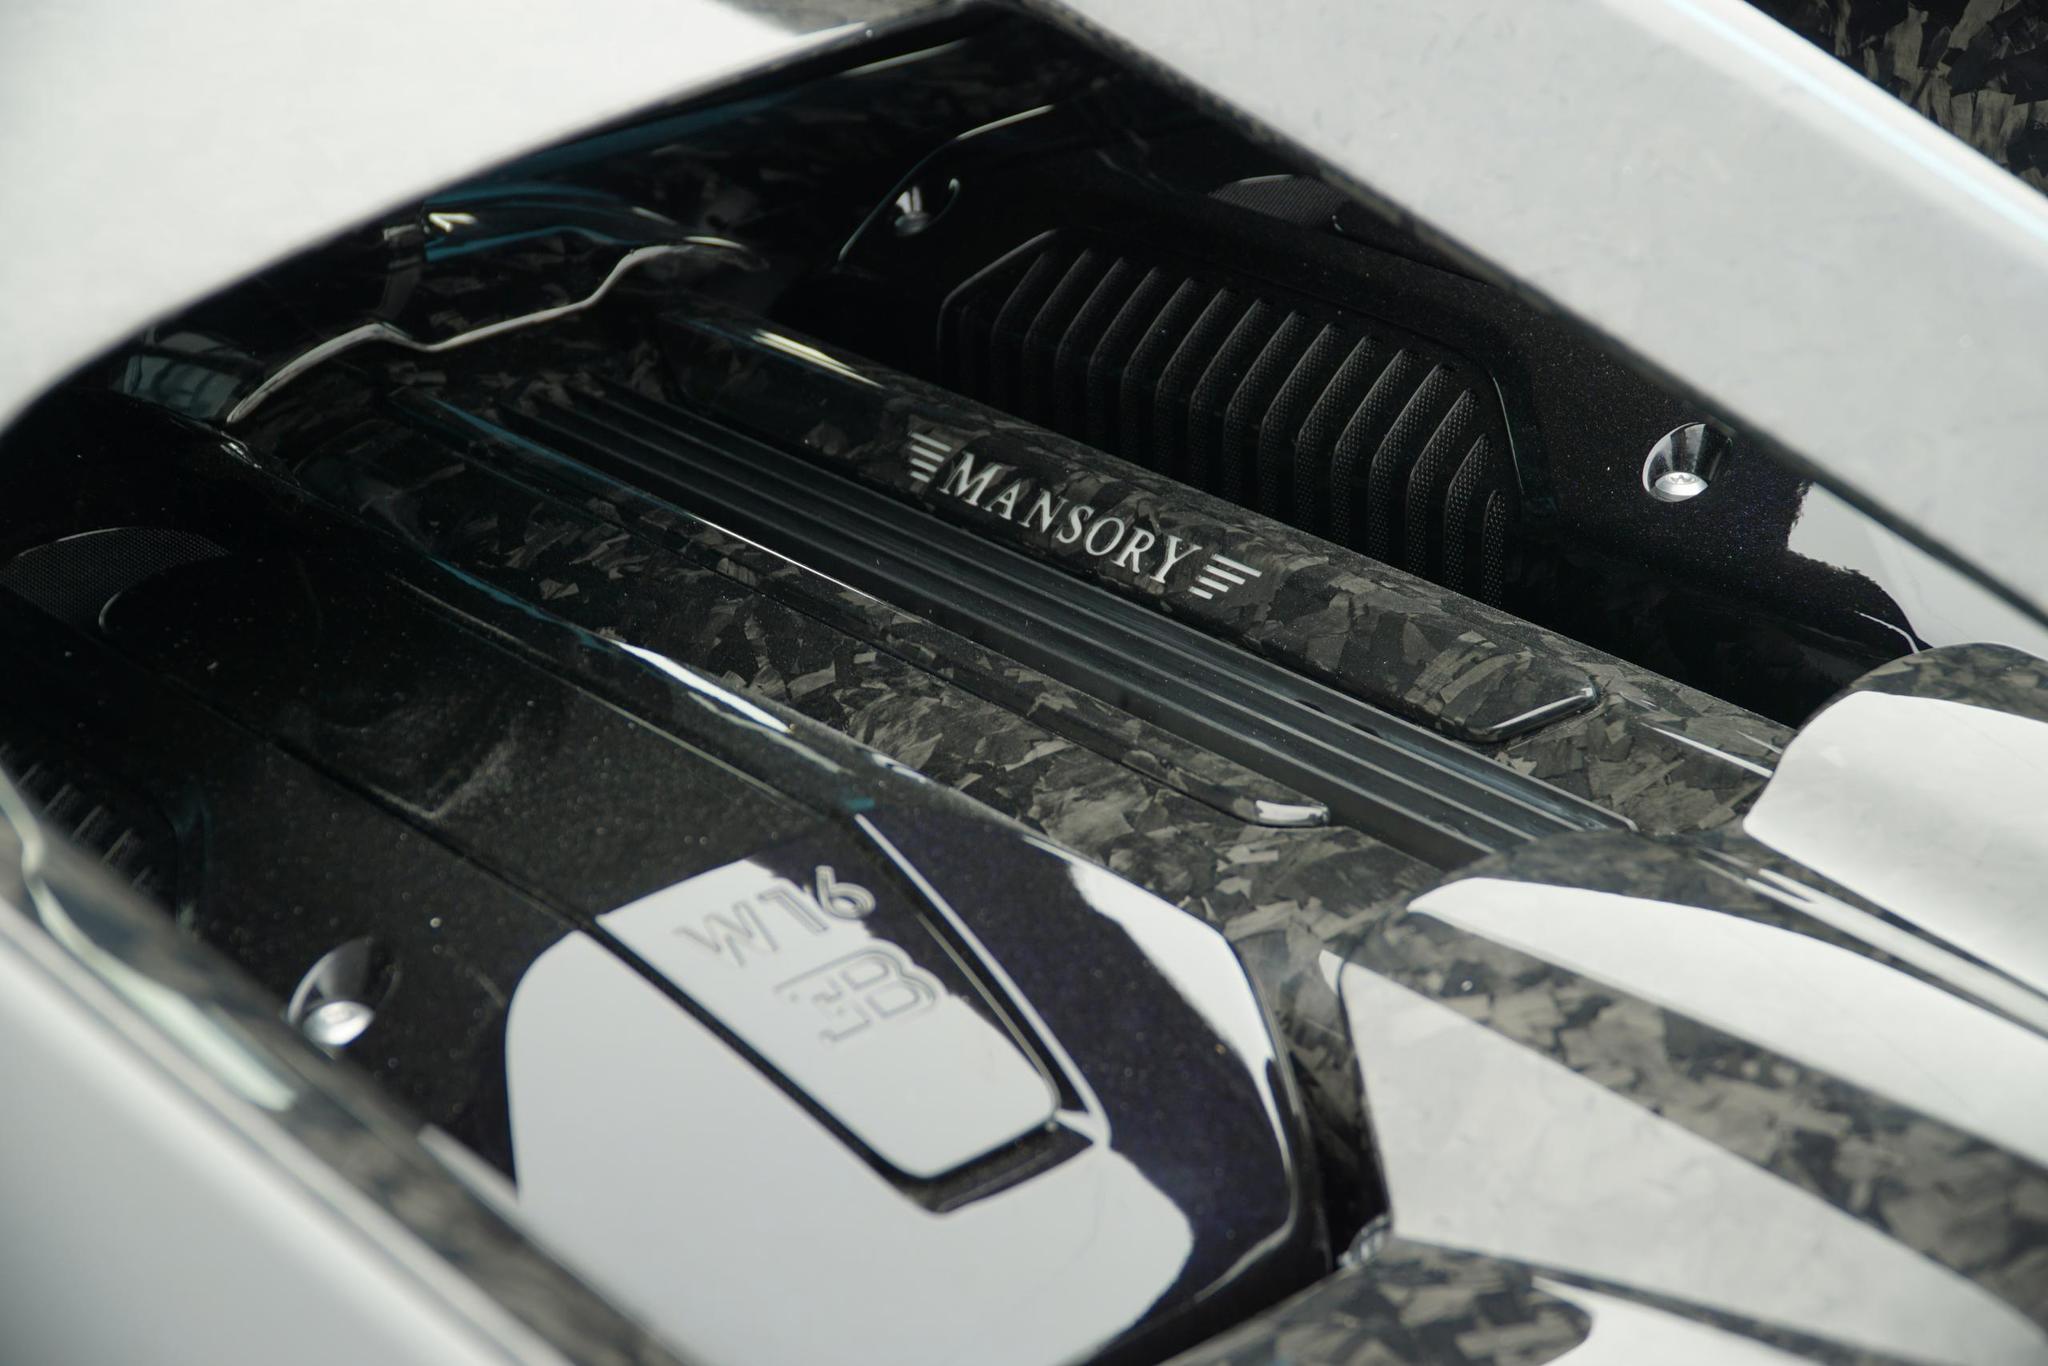 Mansory body kit for Bugatti Chiron new model